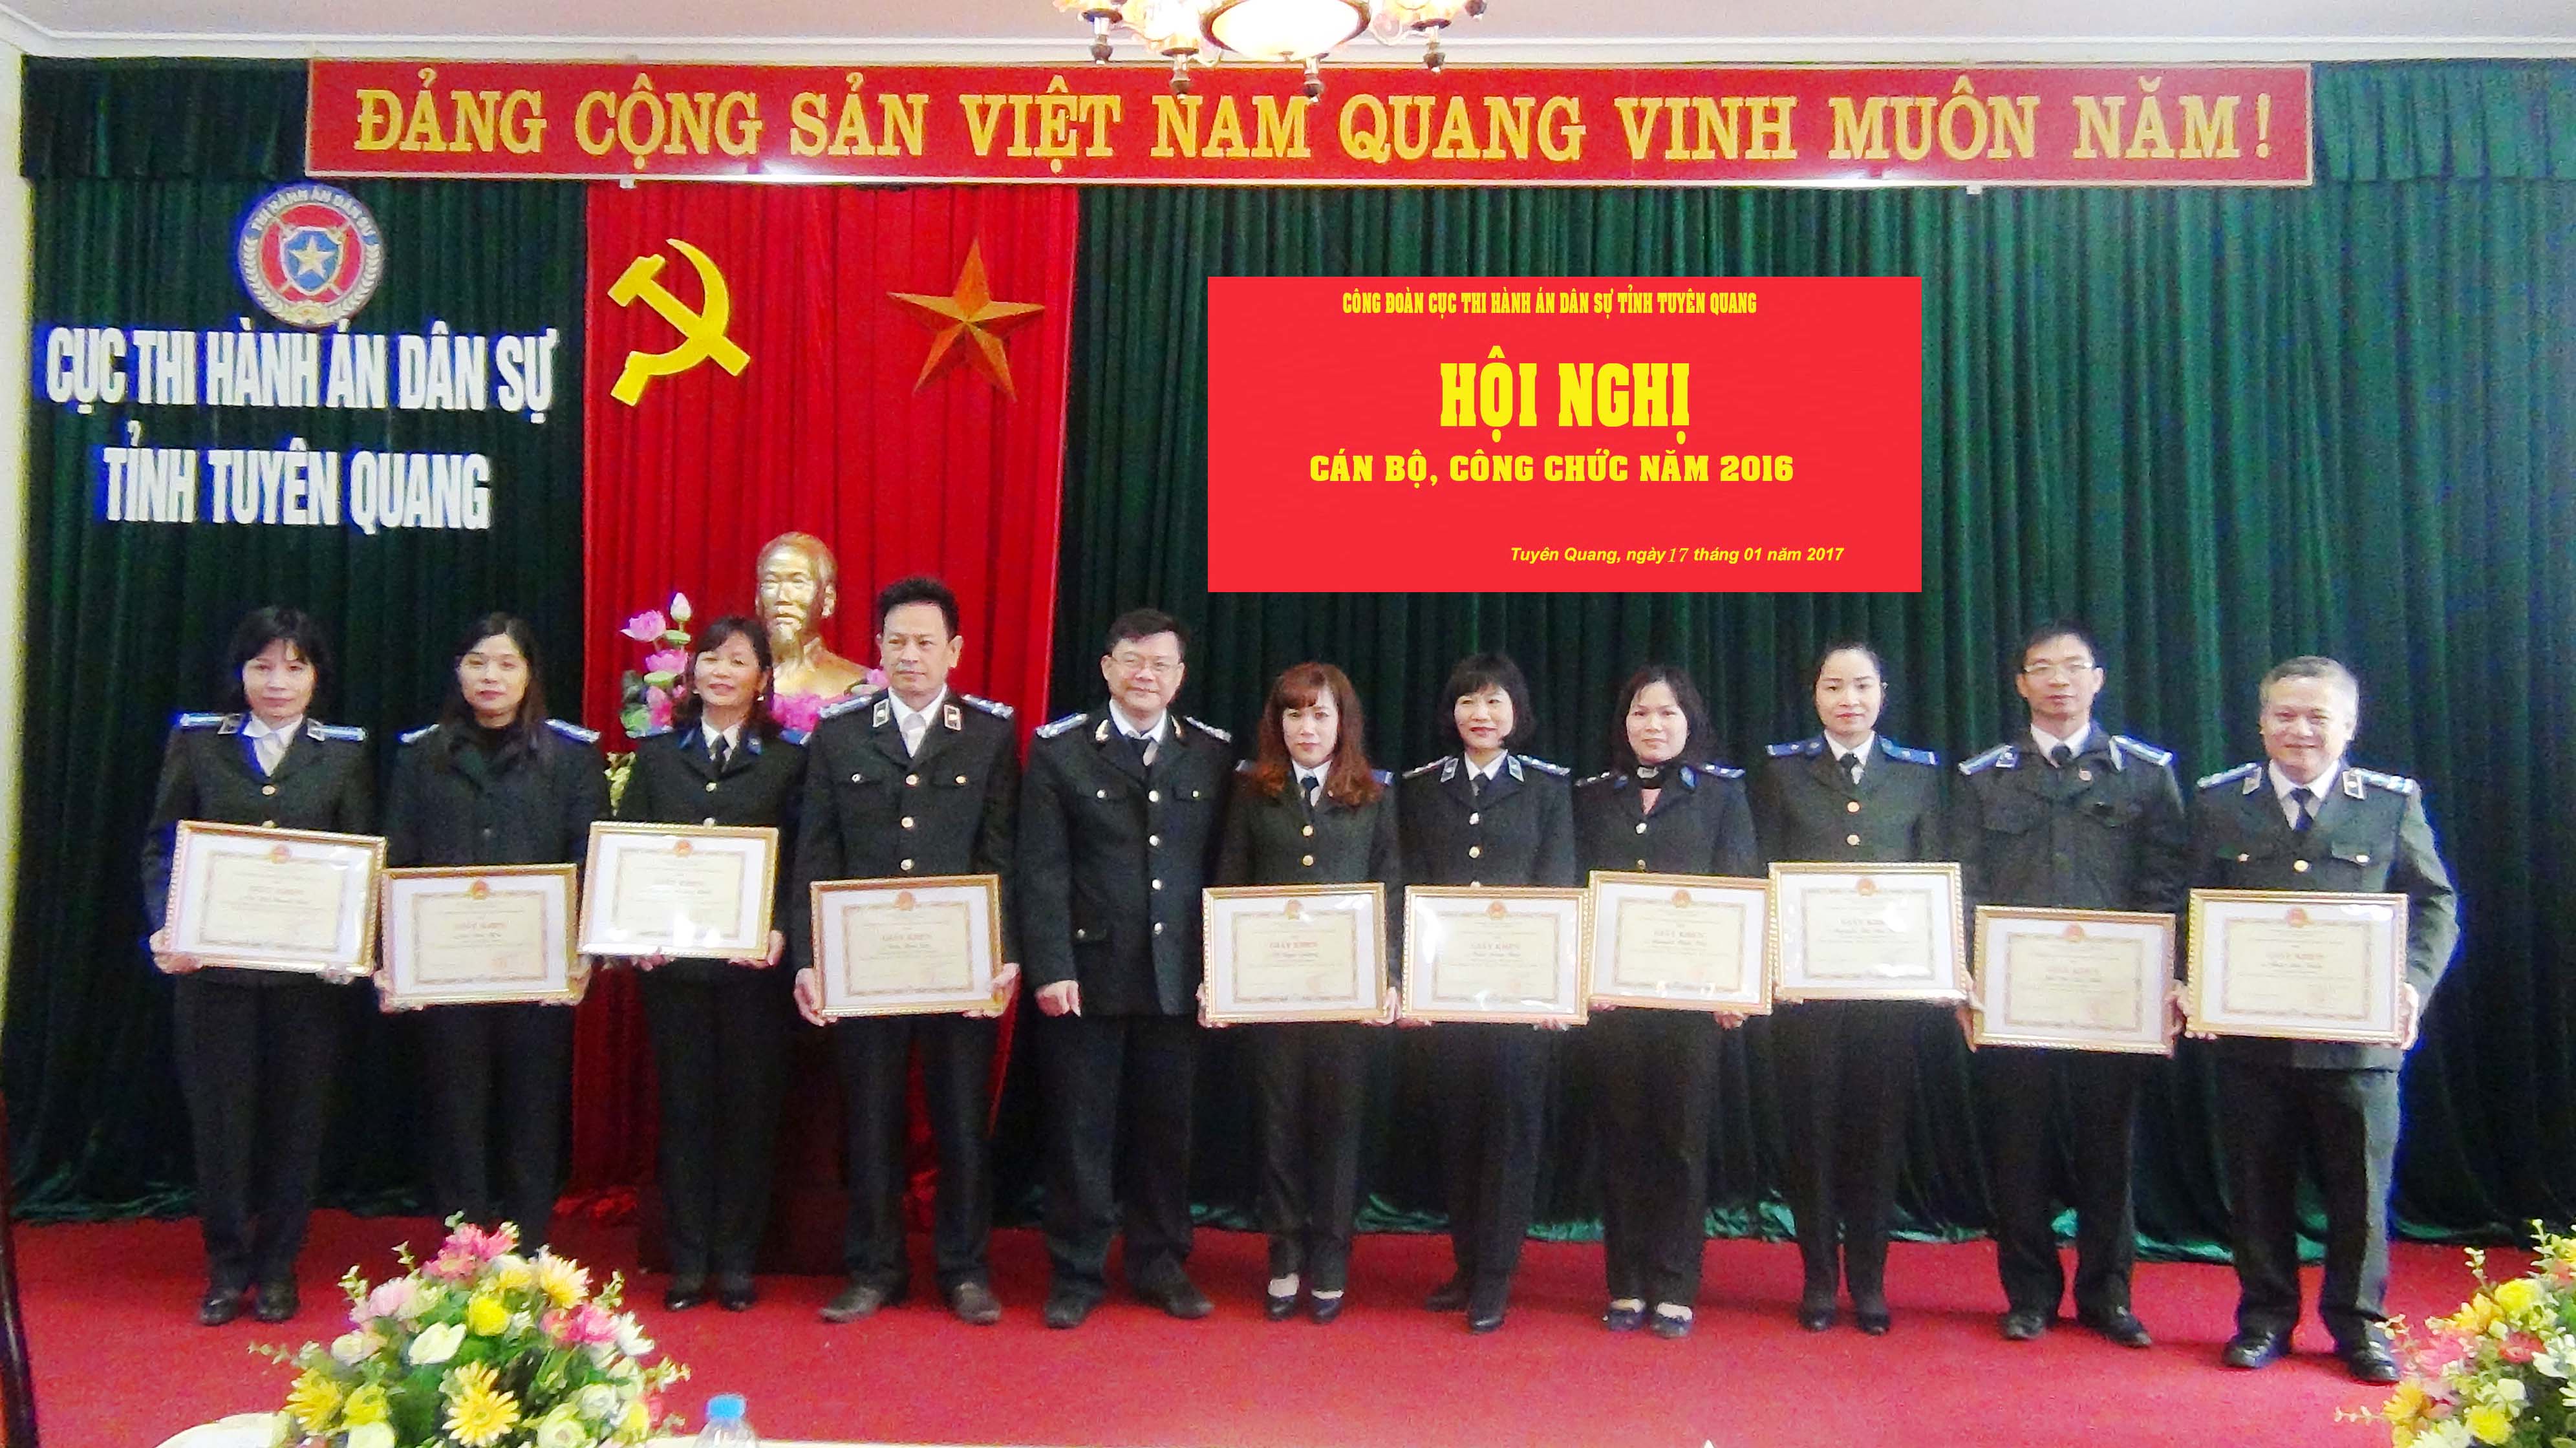 Cục thi hành án dân sự - Công đoàn Cục Thi hành án dân sự tỉnh Tuyên Quang tổ chức Hội nghị cán bộ, công chức năm 2016.